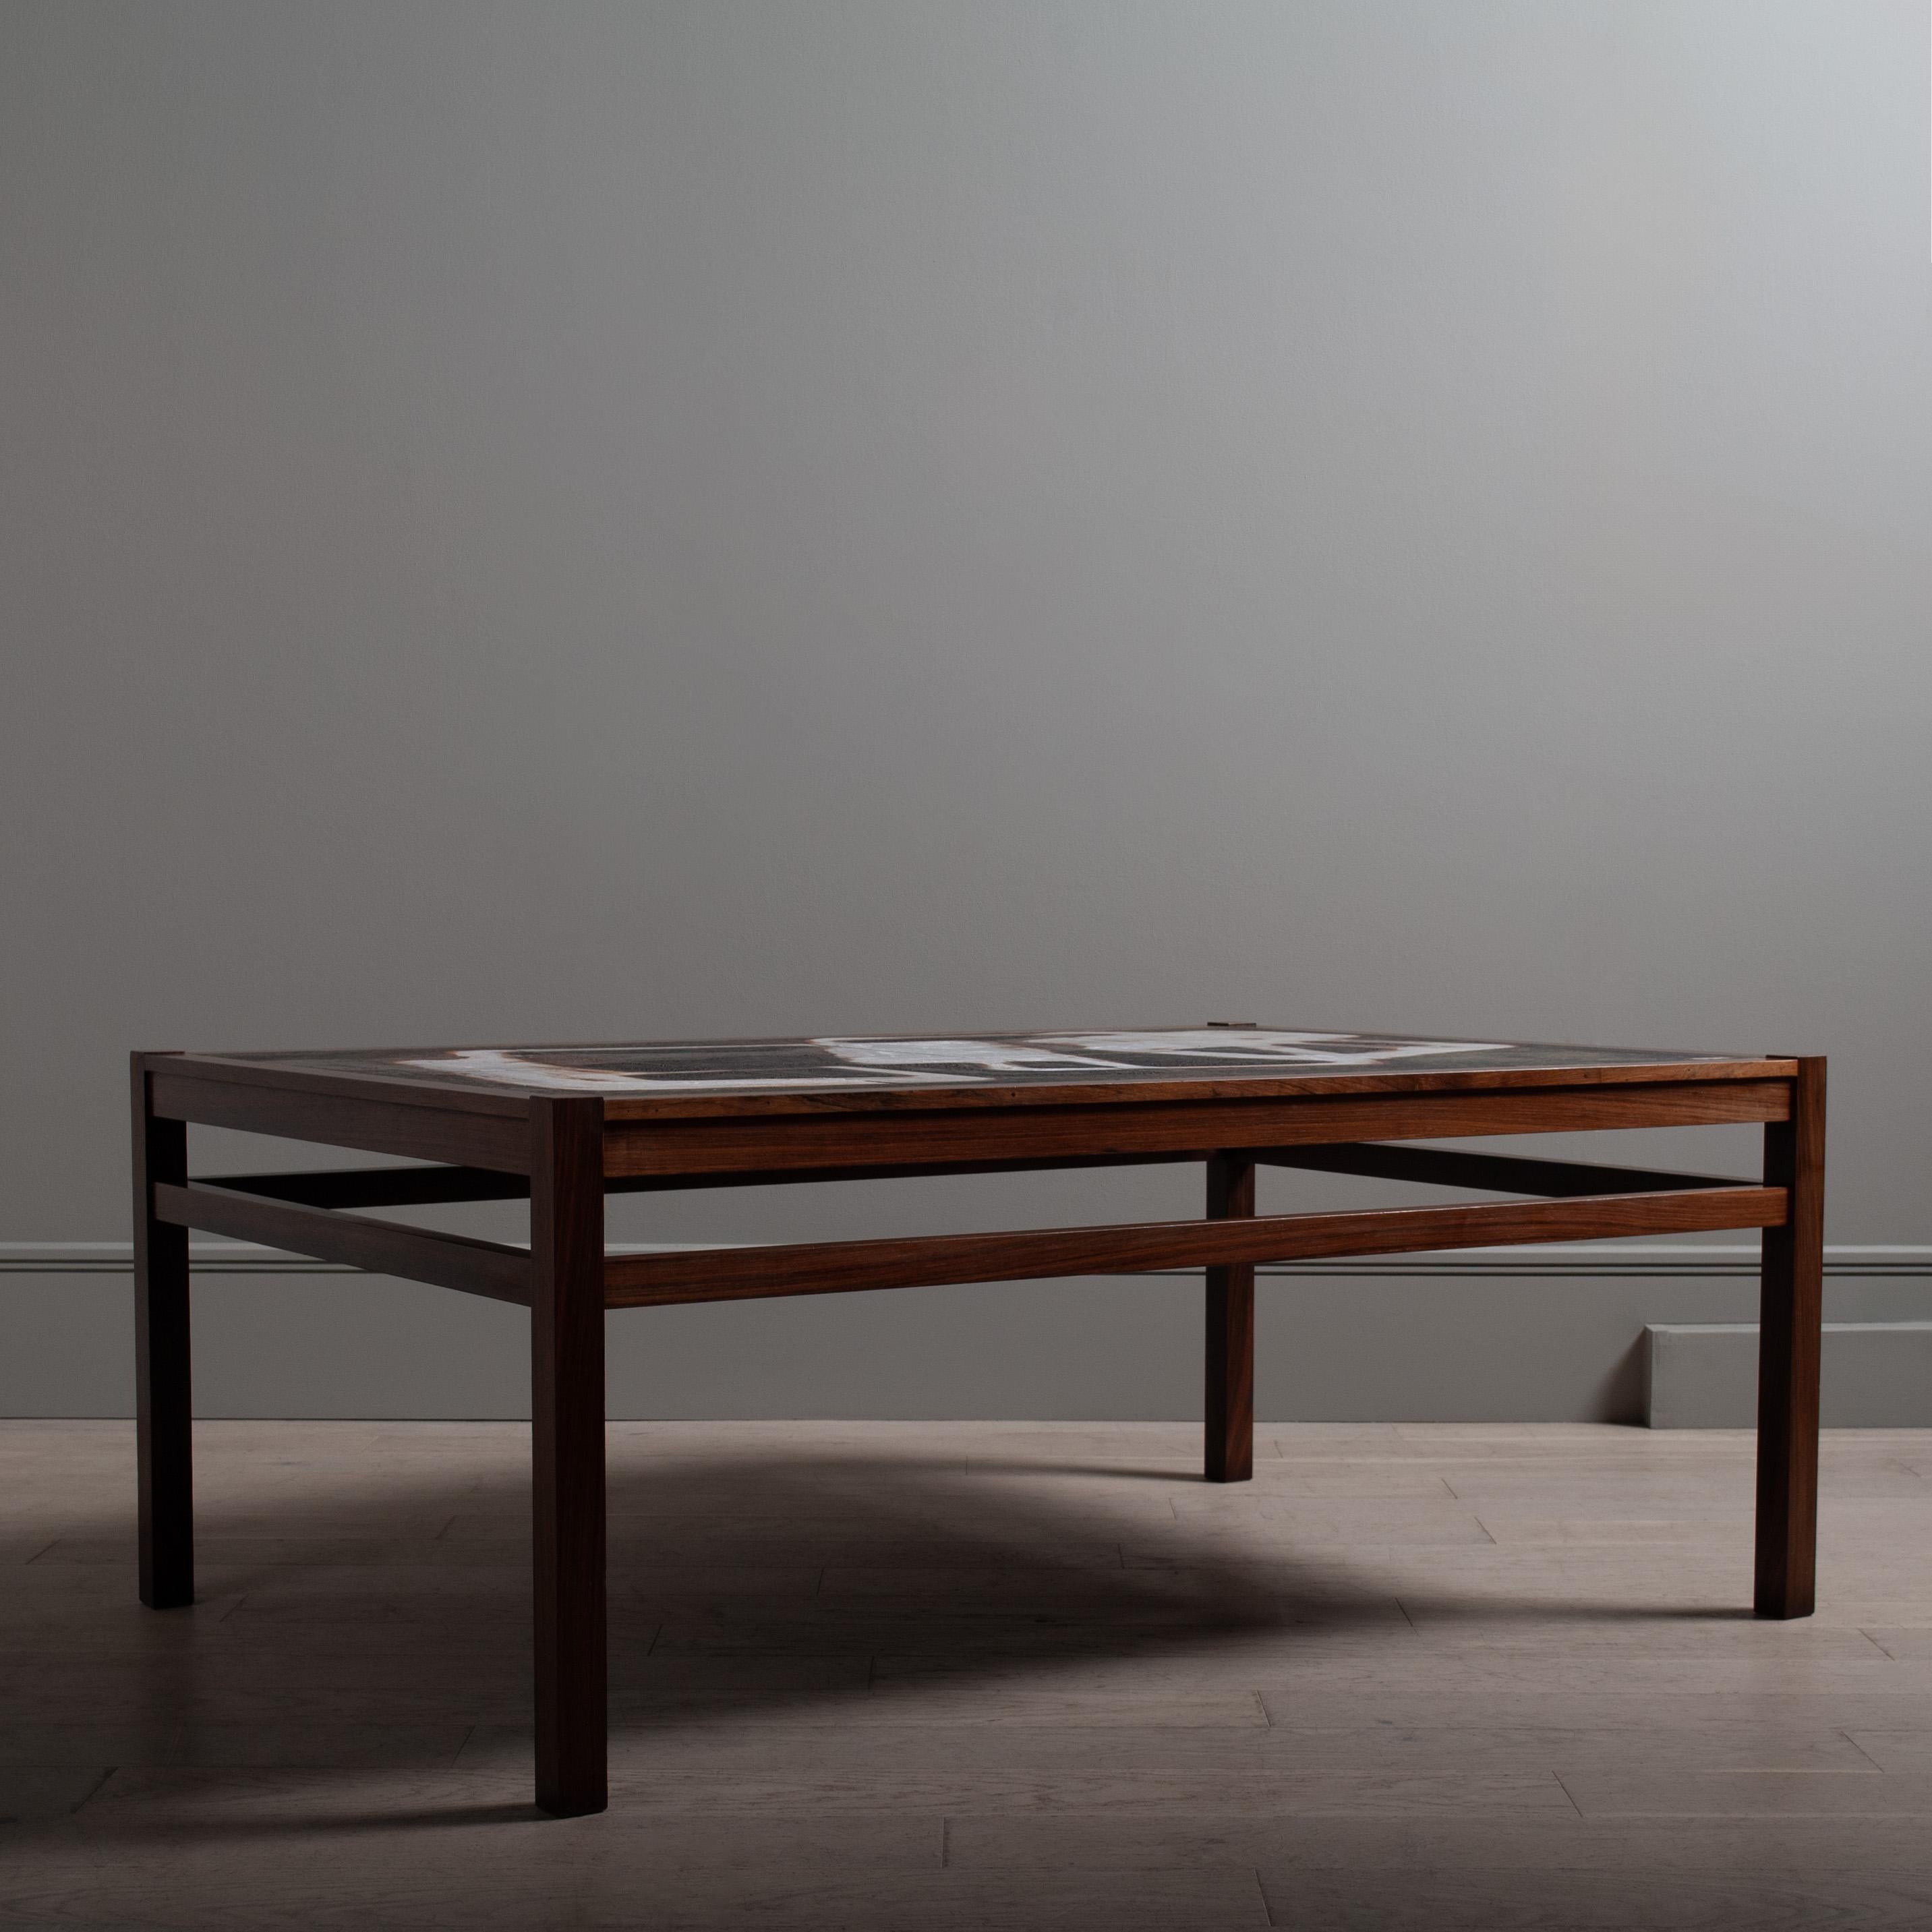 Une table d'art en céramique substantielle, audacieuse et unique de l'artiste danois Ole Bjørn Krüger. Un grand et substantiel meuble de design européen. Visuellement frappant avec un design abstrait stylisé dans le style graphique. Le grès